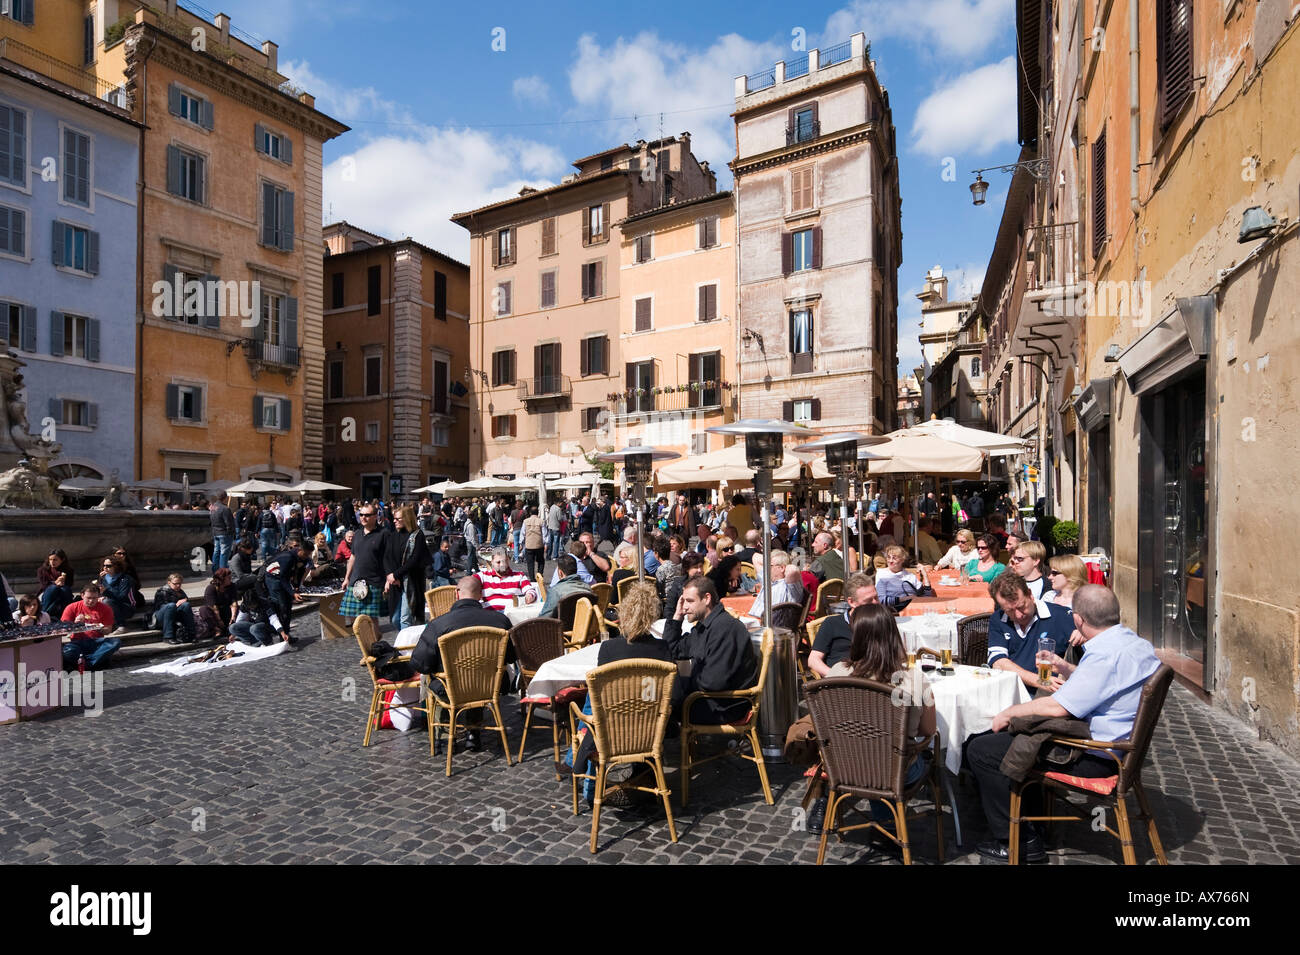 Sidewalk restaurant, Piazza della Rotonda, Historic Centre, Rome, Italy Stock Photo